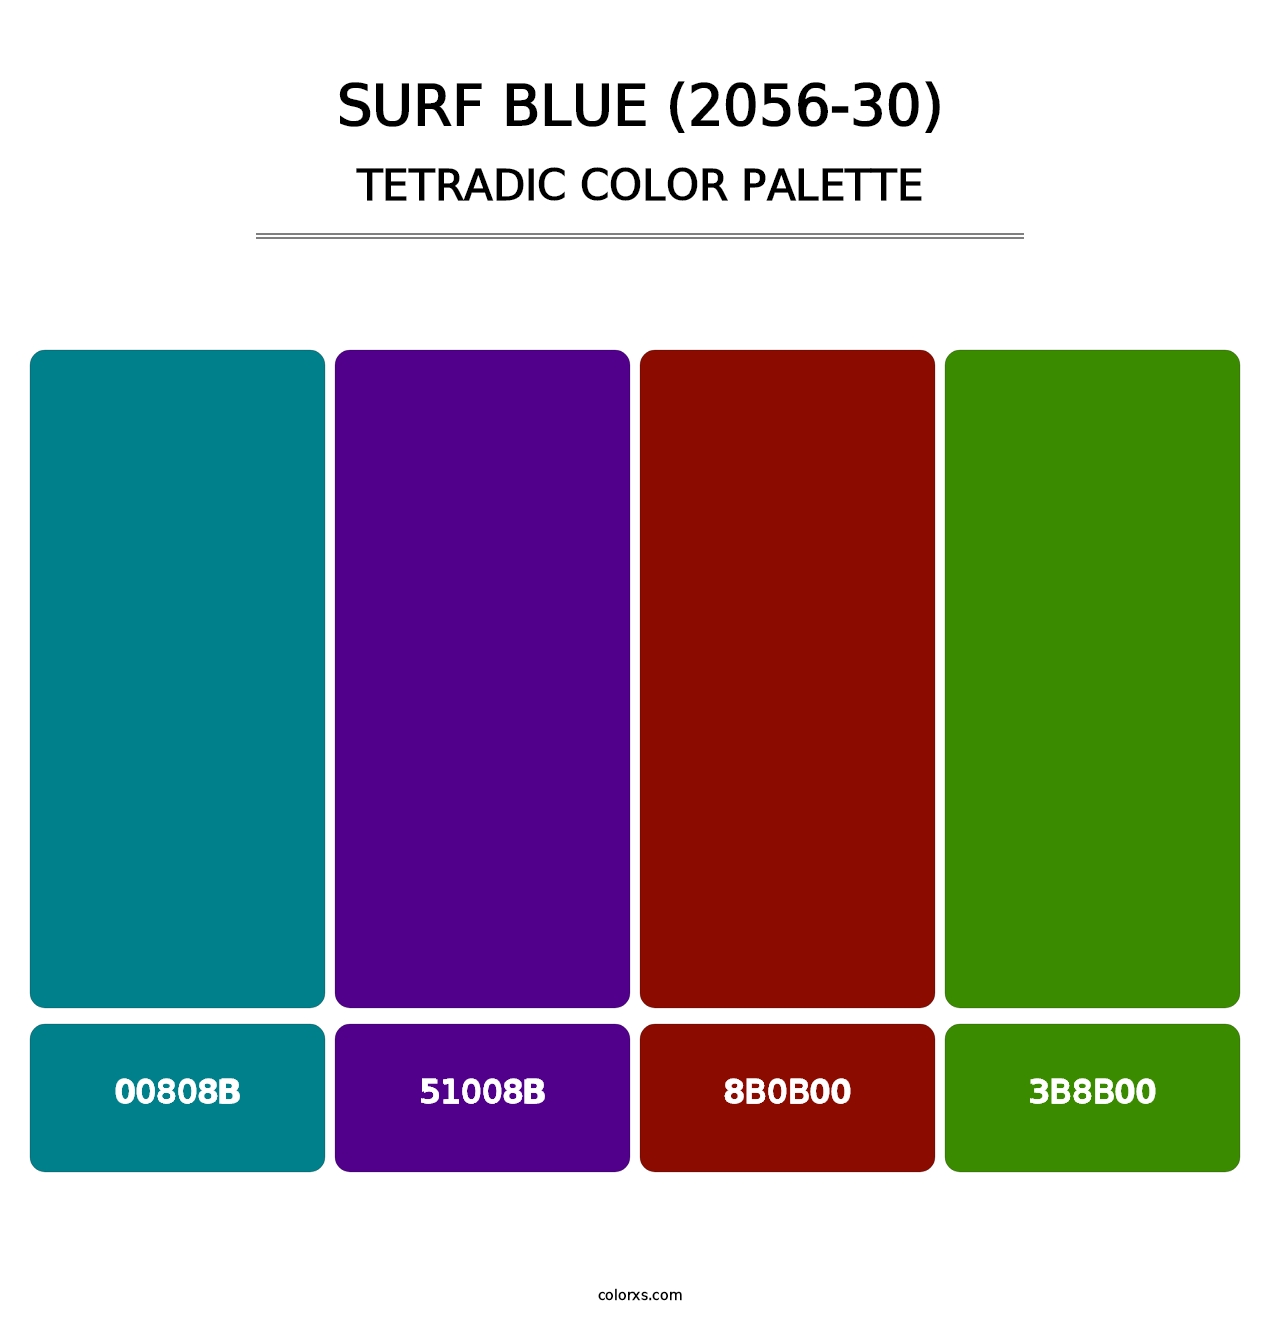 Surf Blue (2056-30) - Tetradic Color Palette